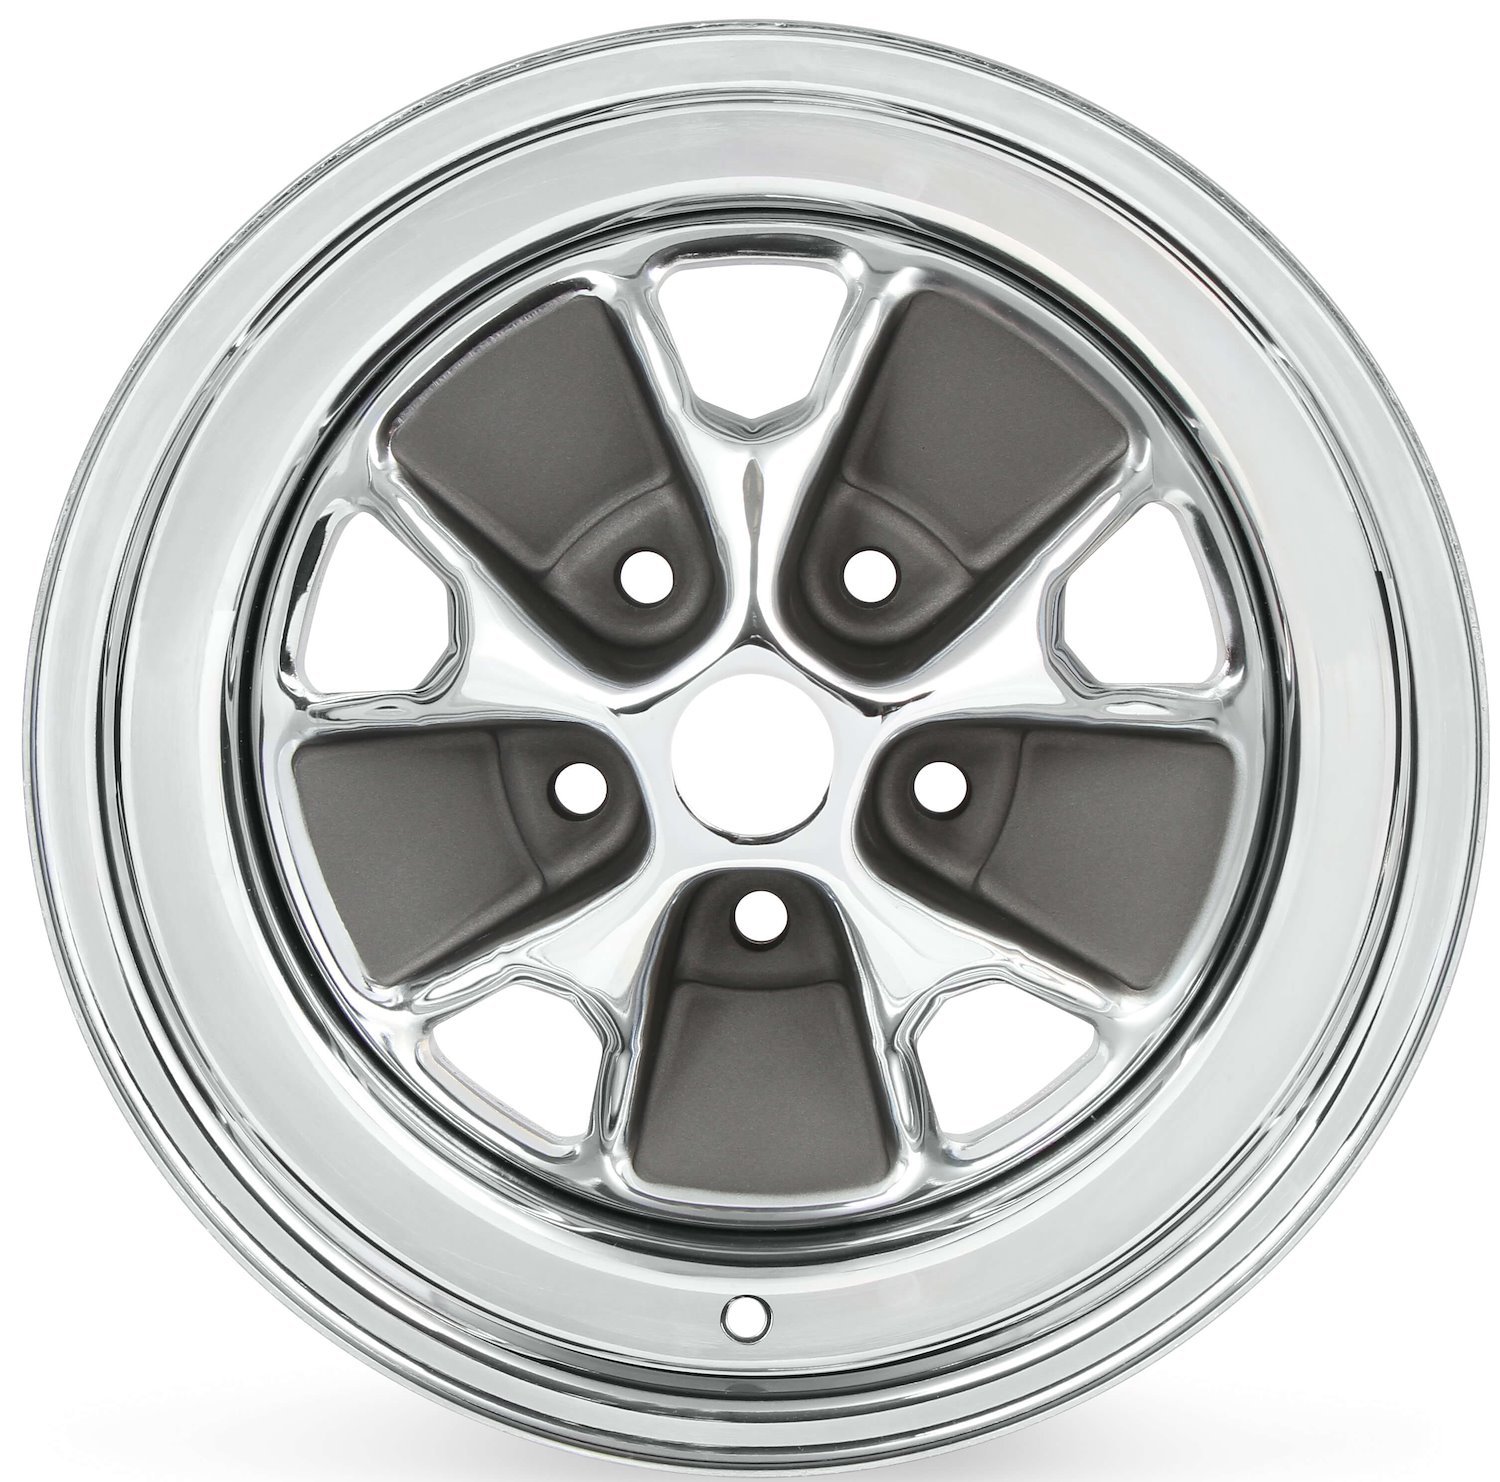 C5ZZ Chrome/Charcoal Styled Steel Wheel [Size: 15" x 7"]